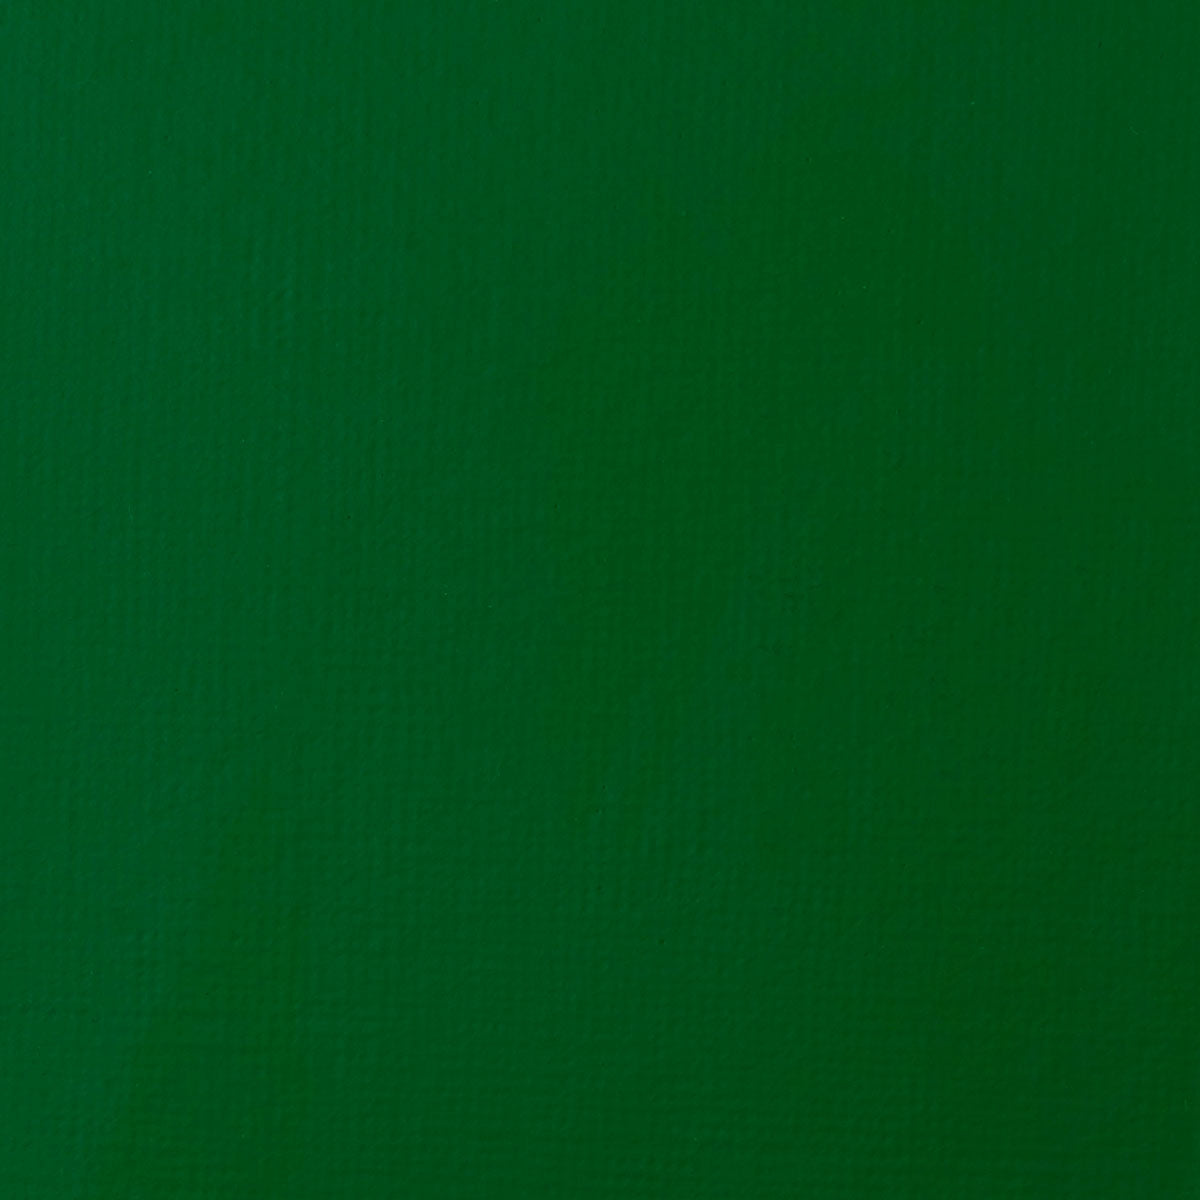 Liquitex - Acryl Gouache 59ml S2 - Smaragdgrün